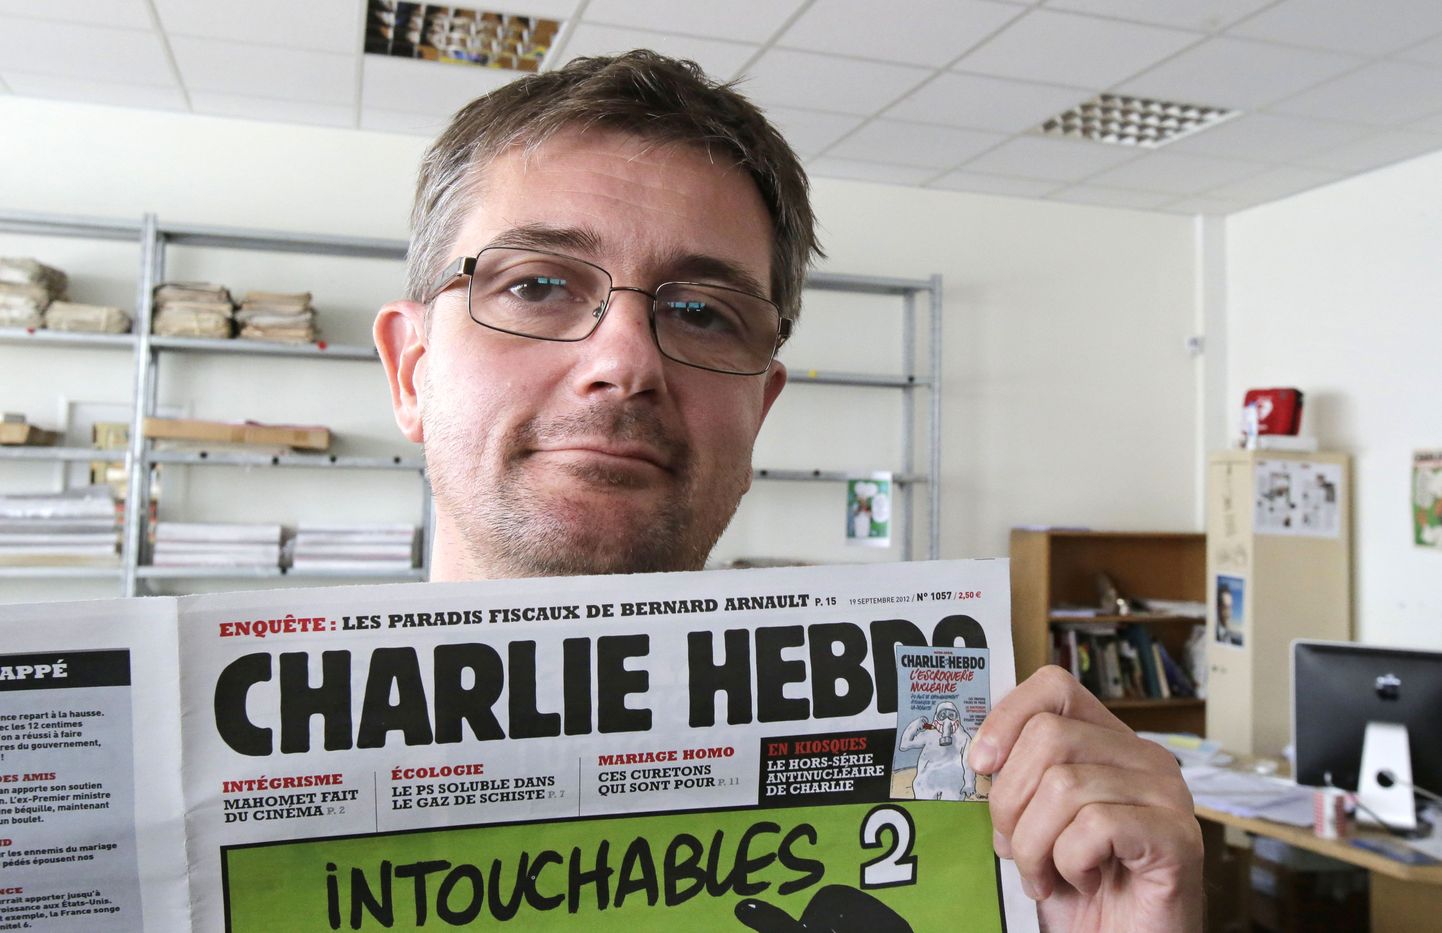 Stephane Charbonnier, alias Charb